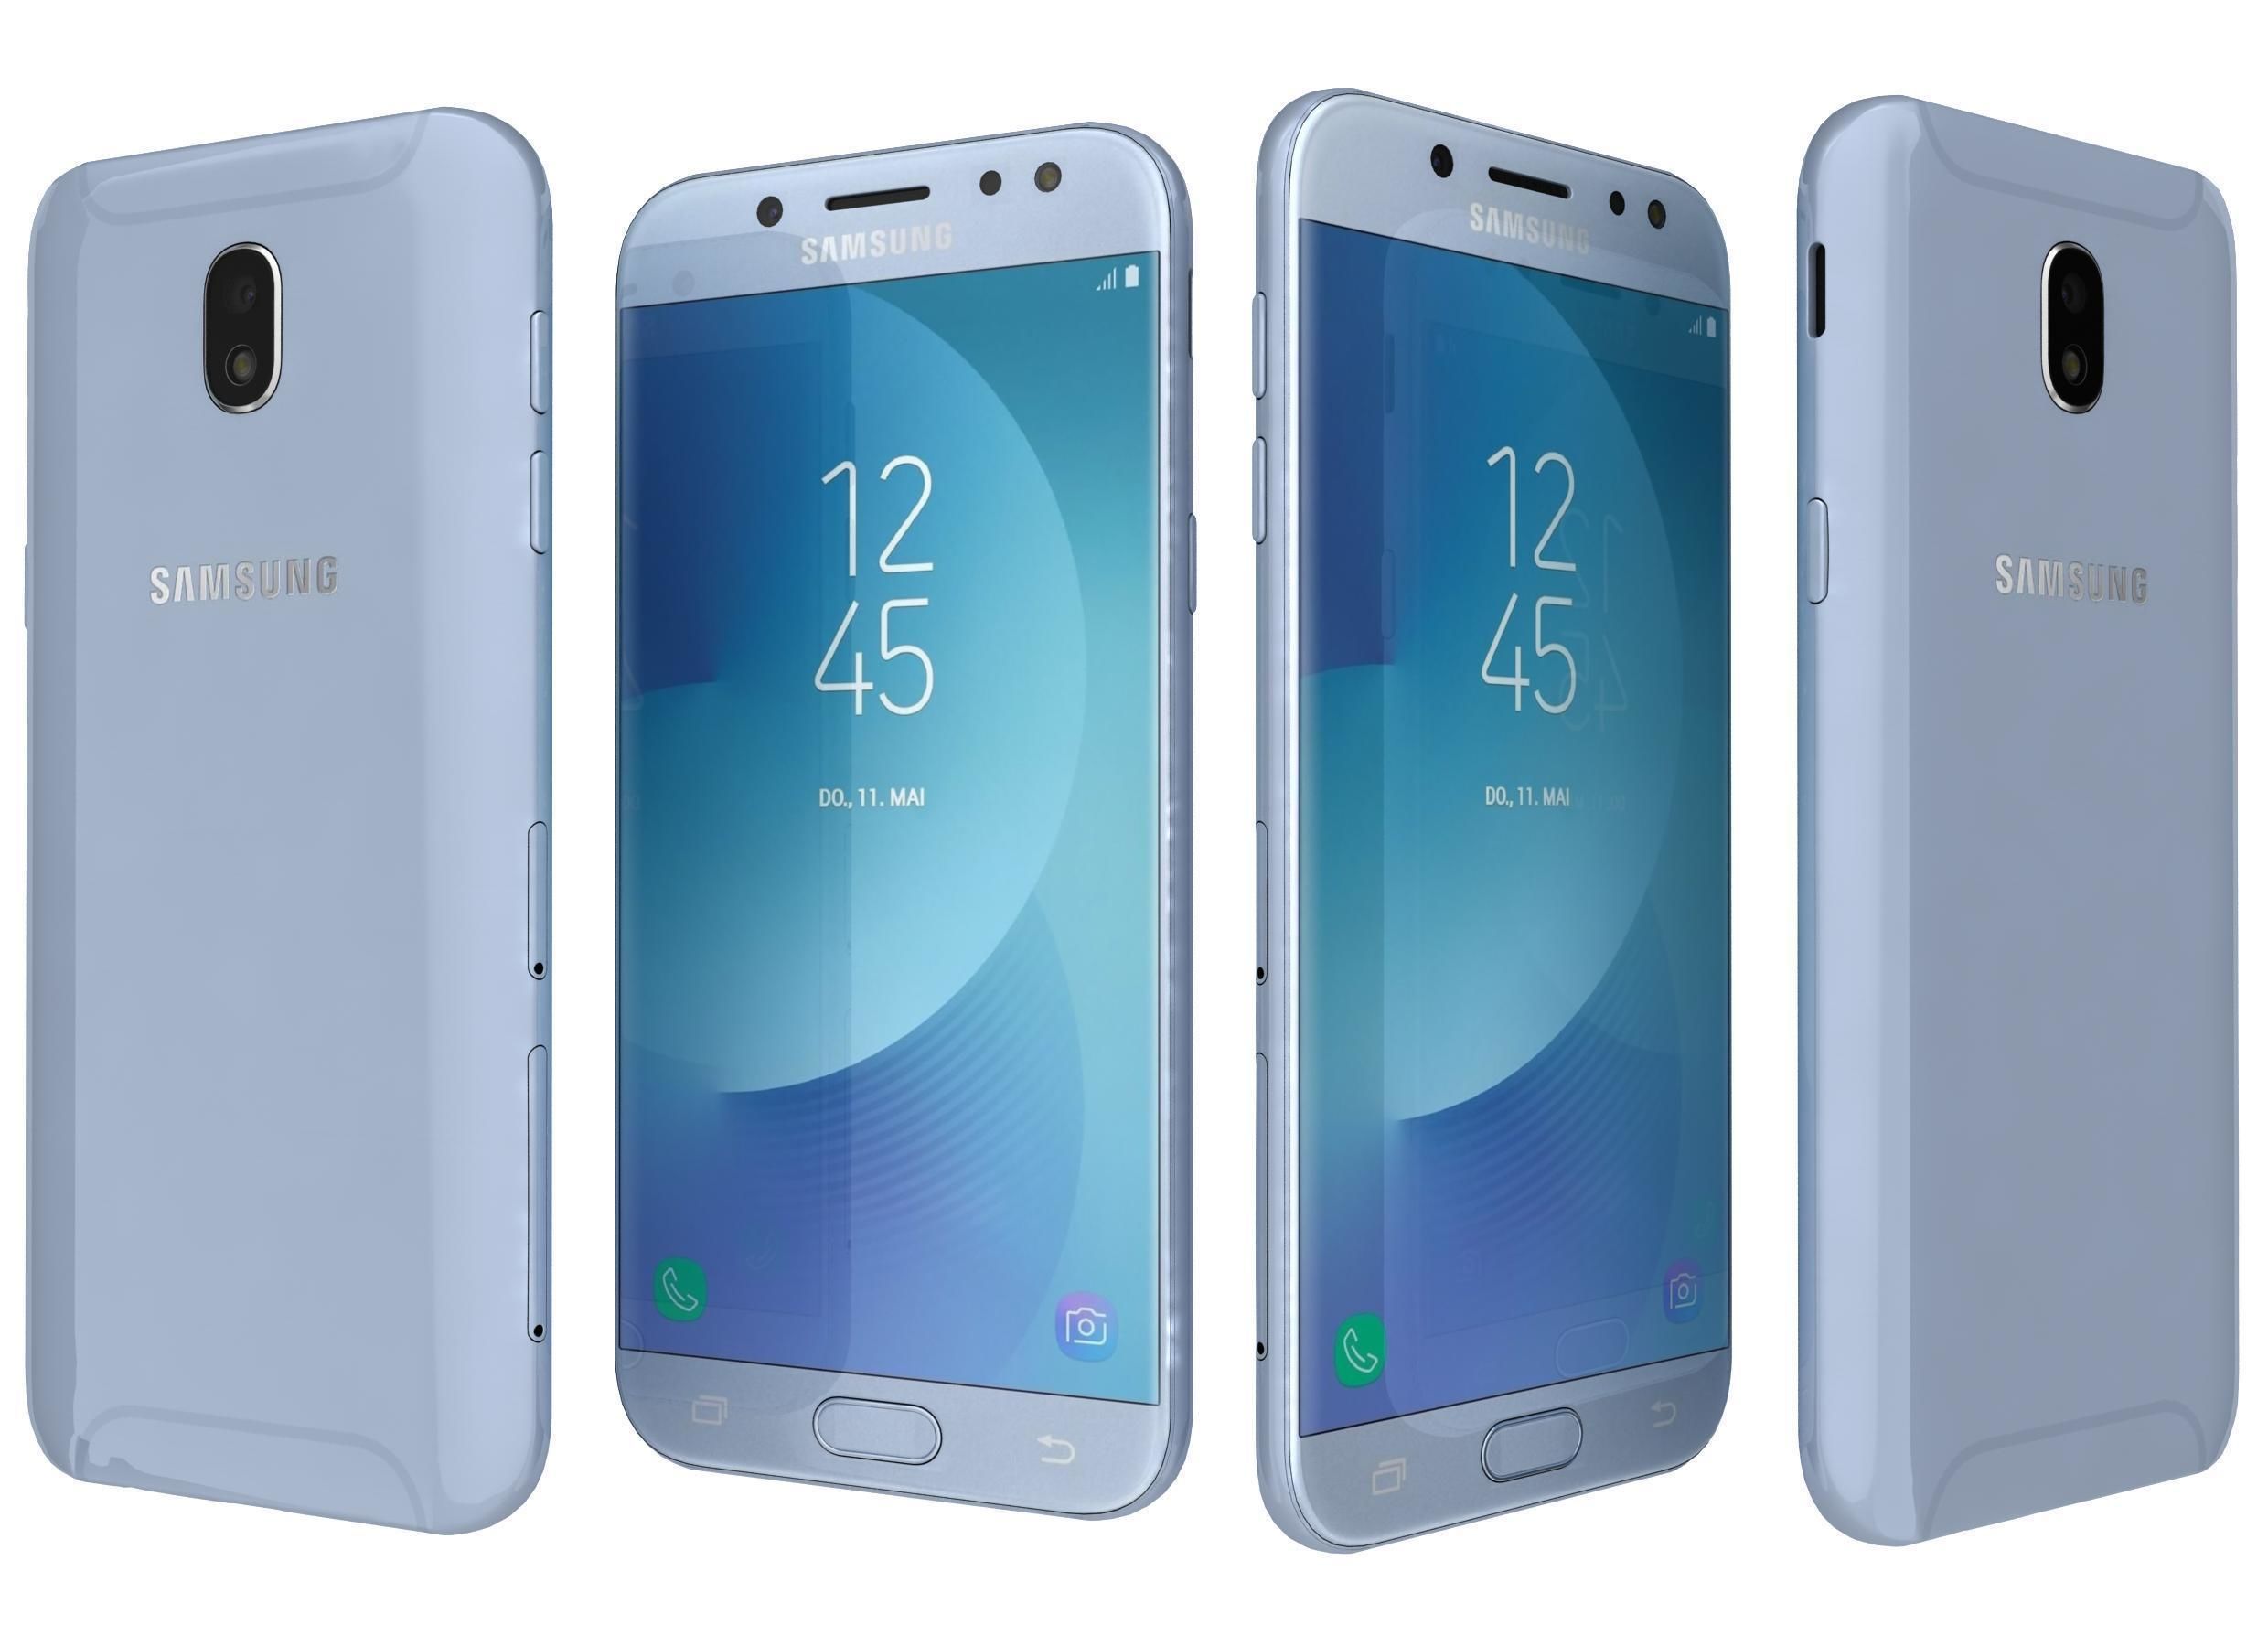 Samsung Galaxy J5 (2017) Duos Price in Algeria, Algiers [El Djazaïr], Oran, Blida